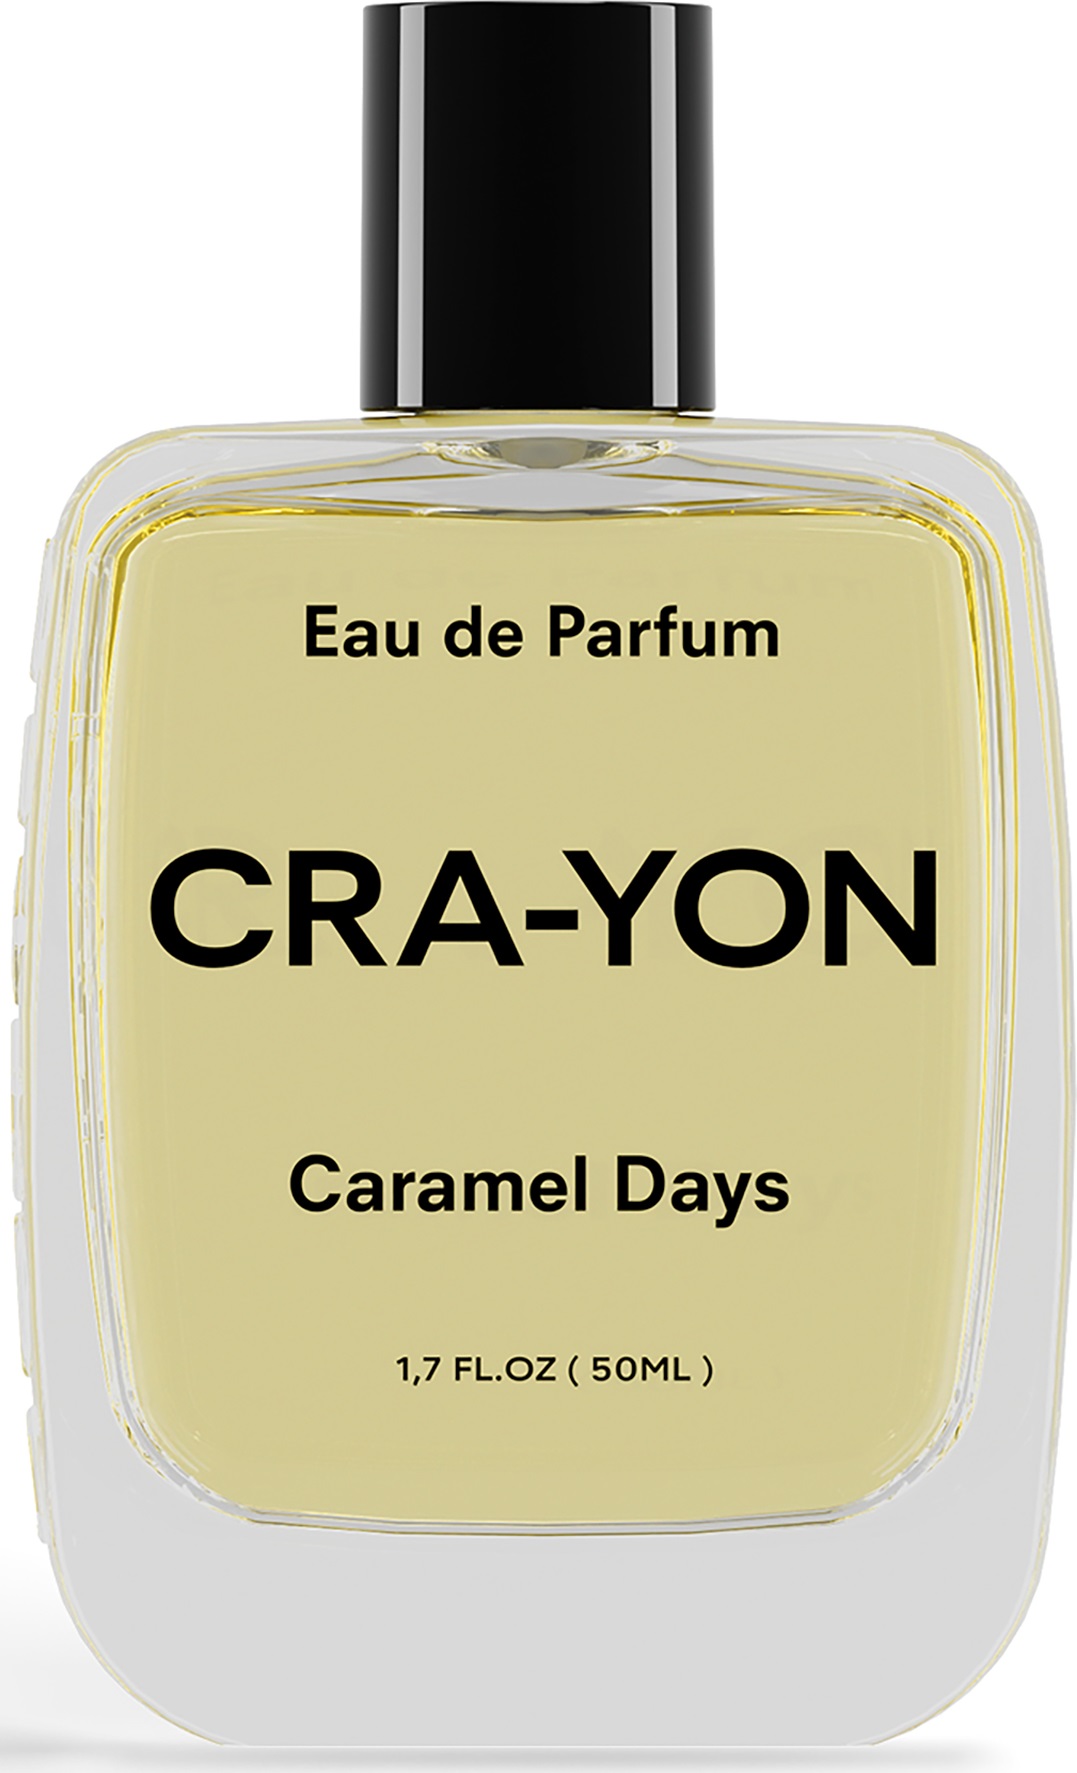 cra-yon caramel days